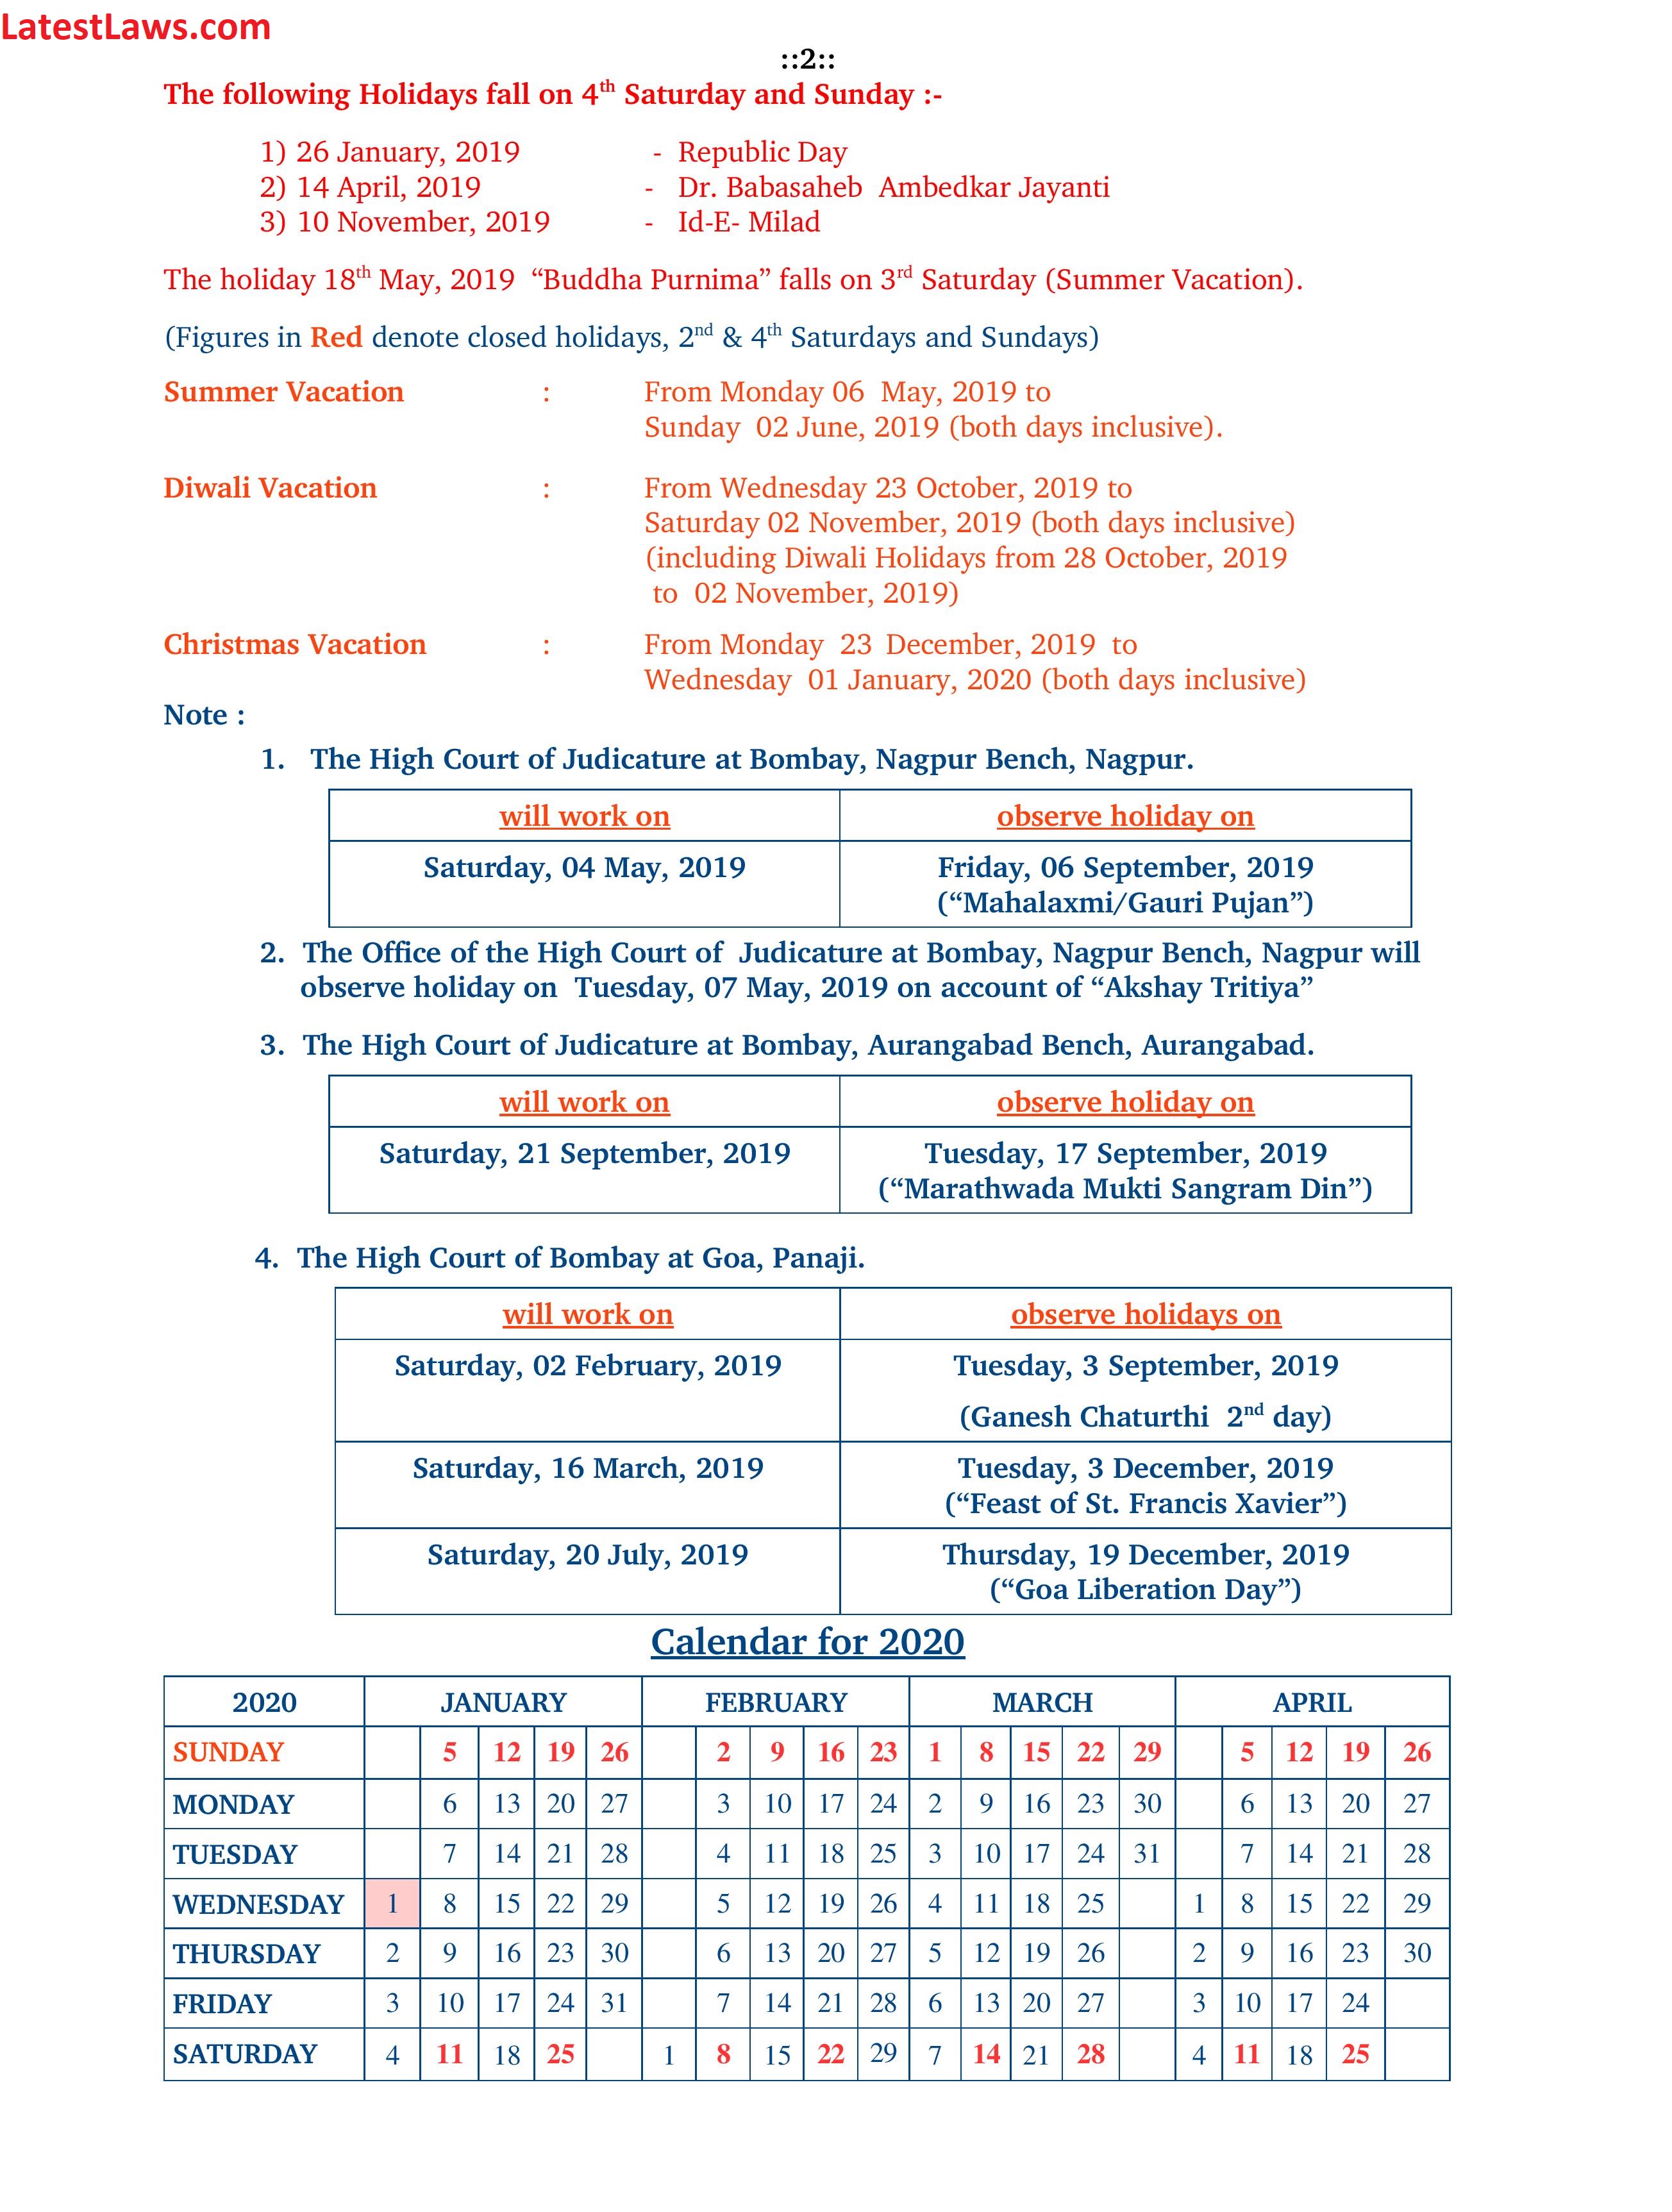 Bombay High Court Calendar 2019